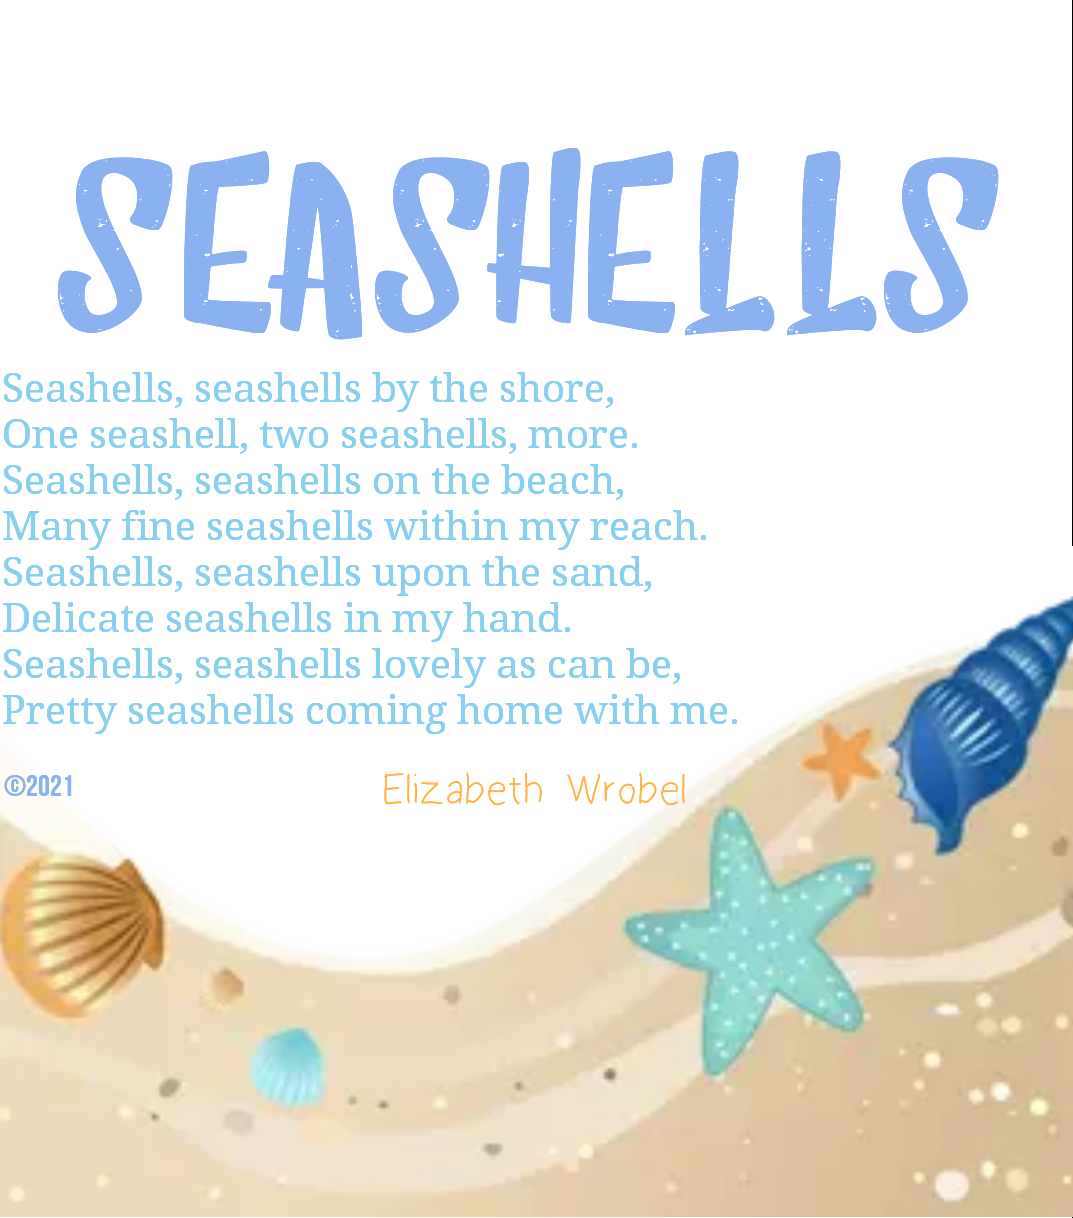 Seashells a summer rhyme by Elizabeth Wrobel